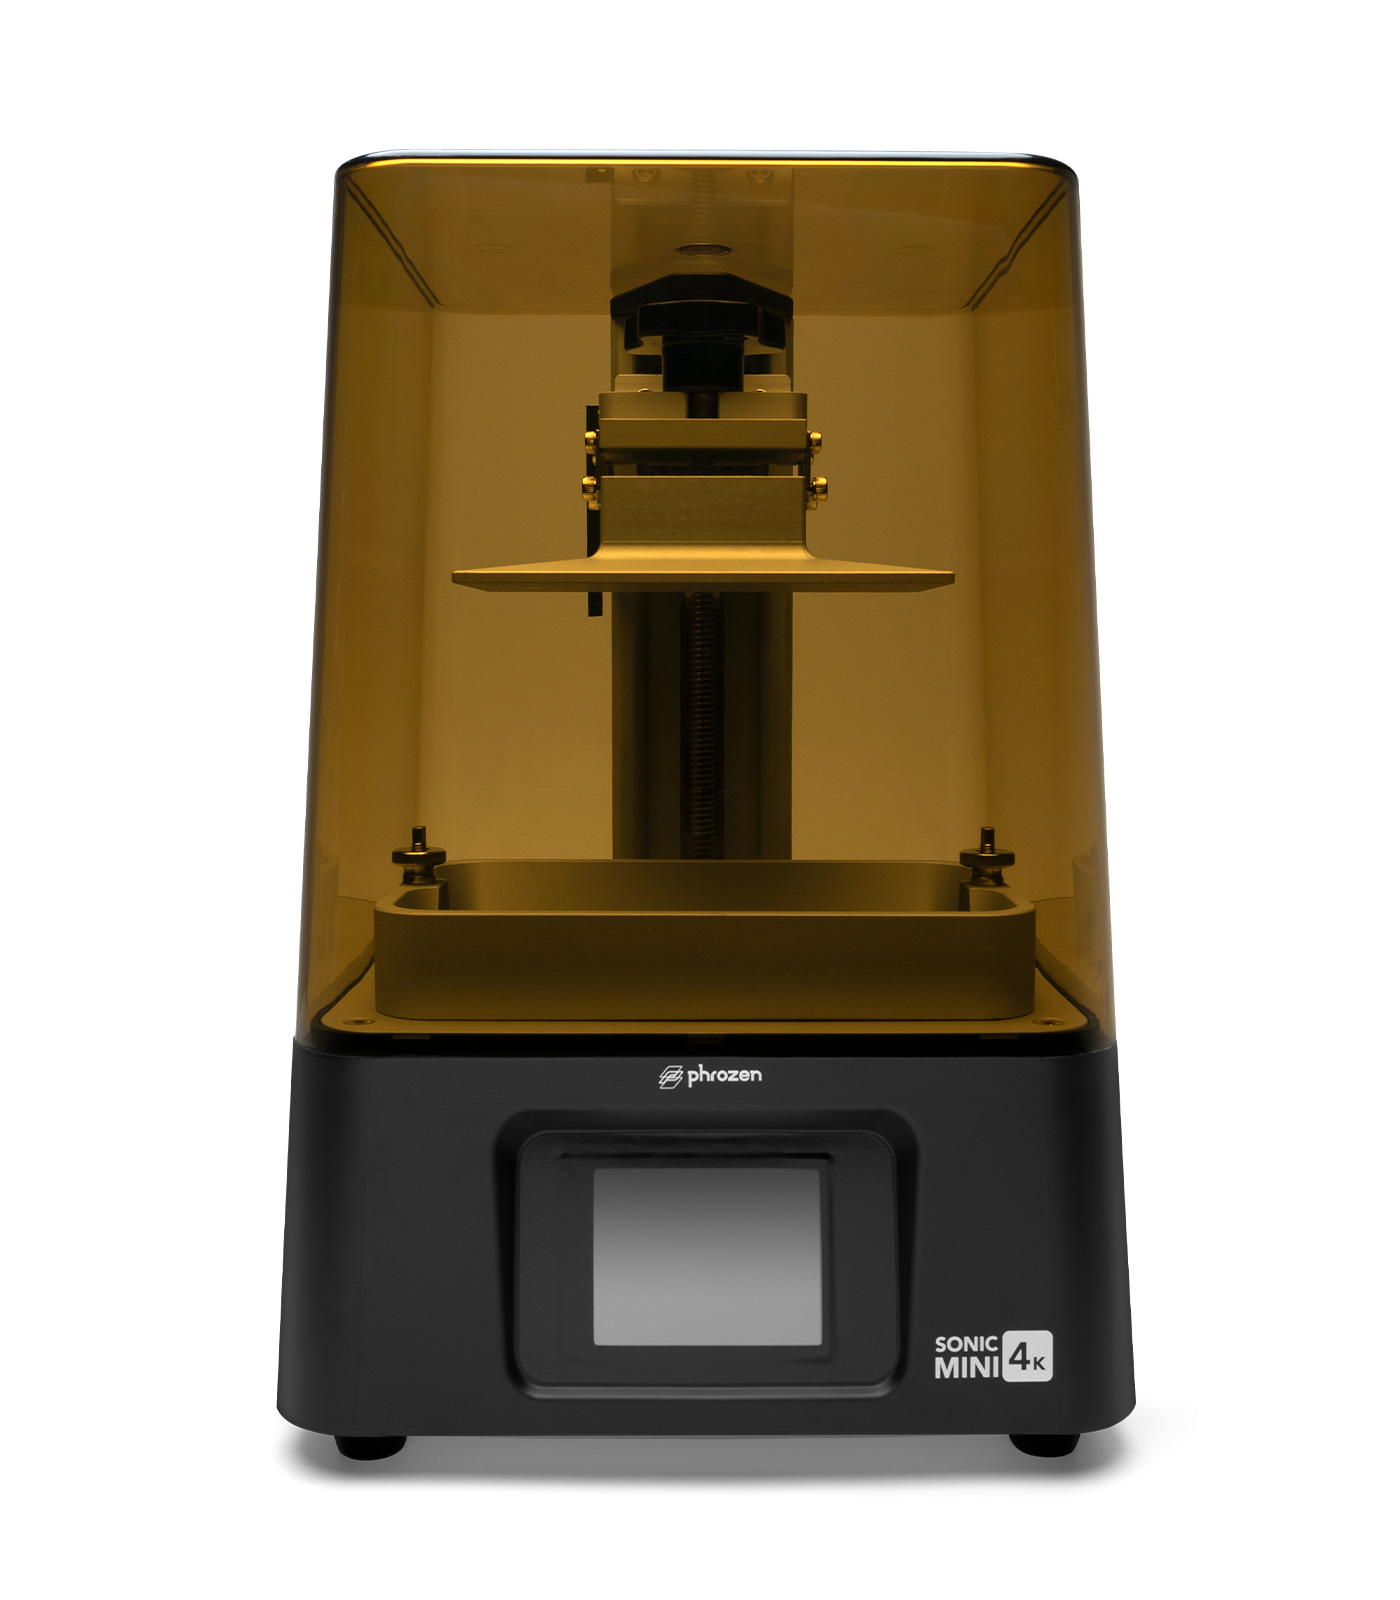 Phrozen Sonic Mini 4K Resin 3D Printer | Phrozen Technology: Resin 